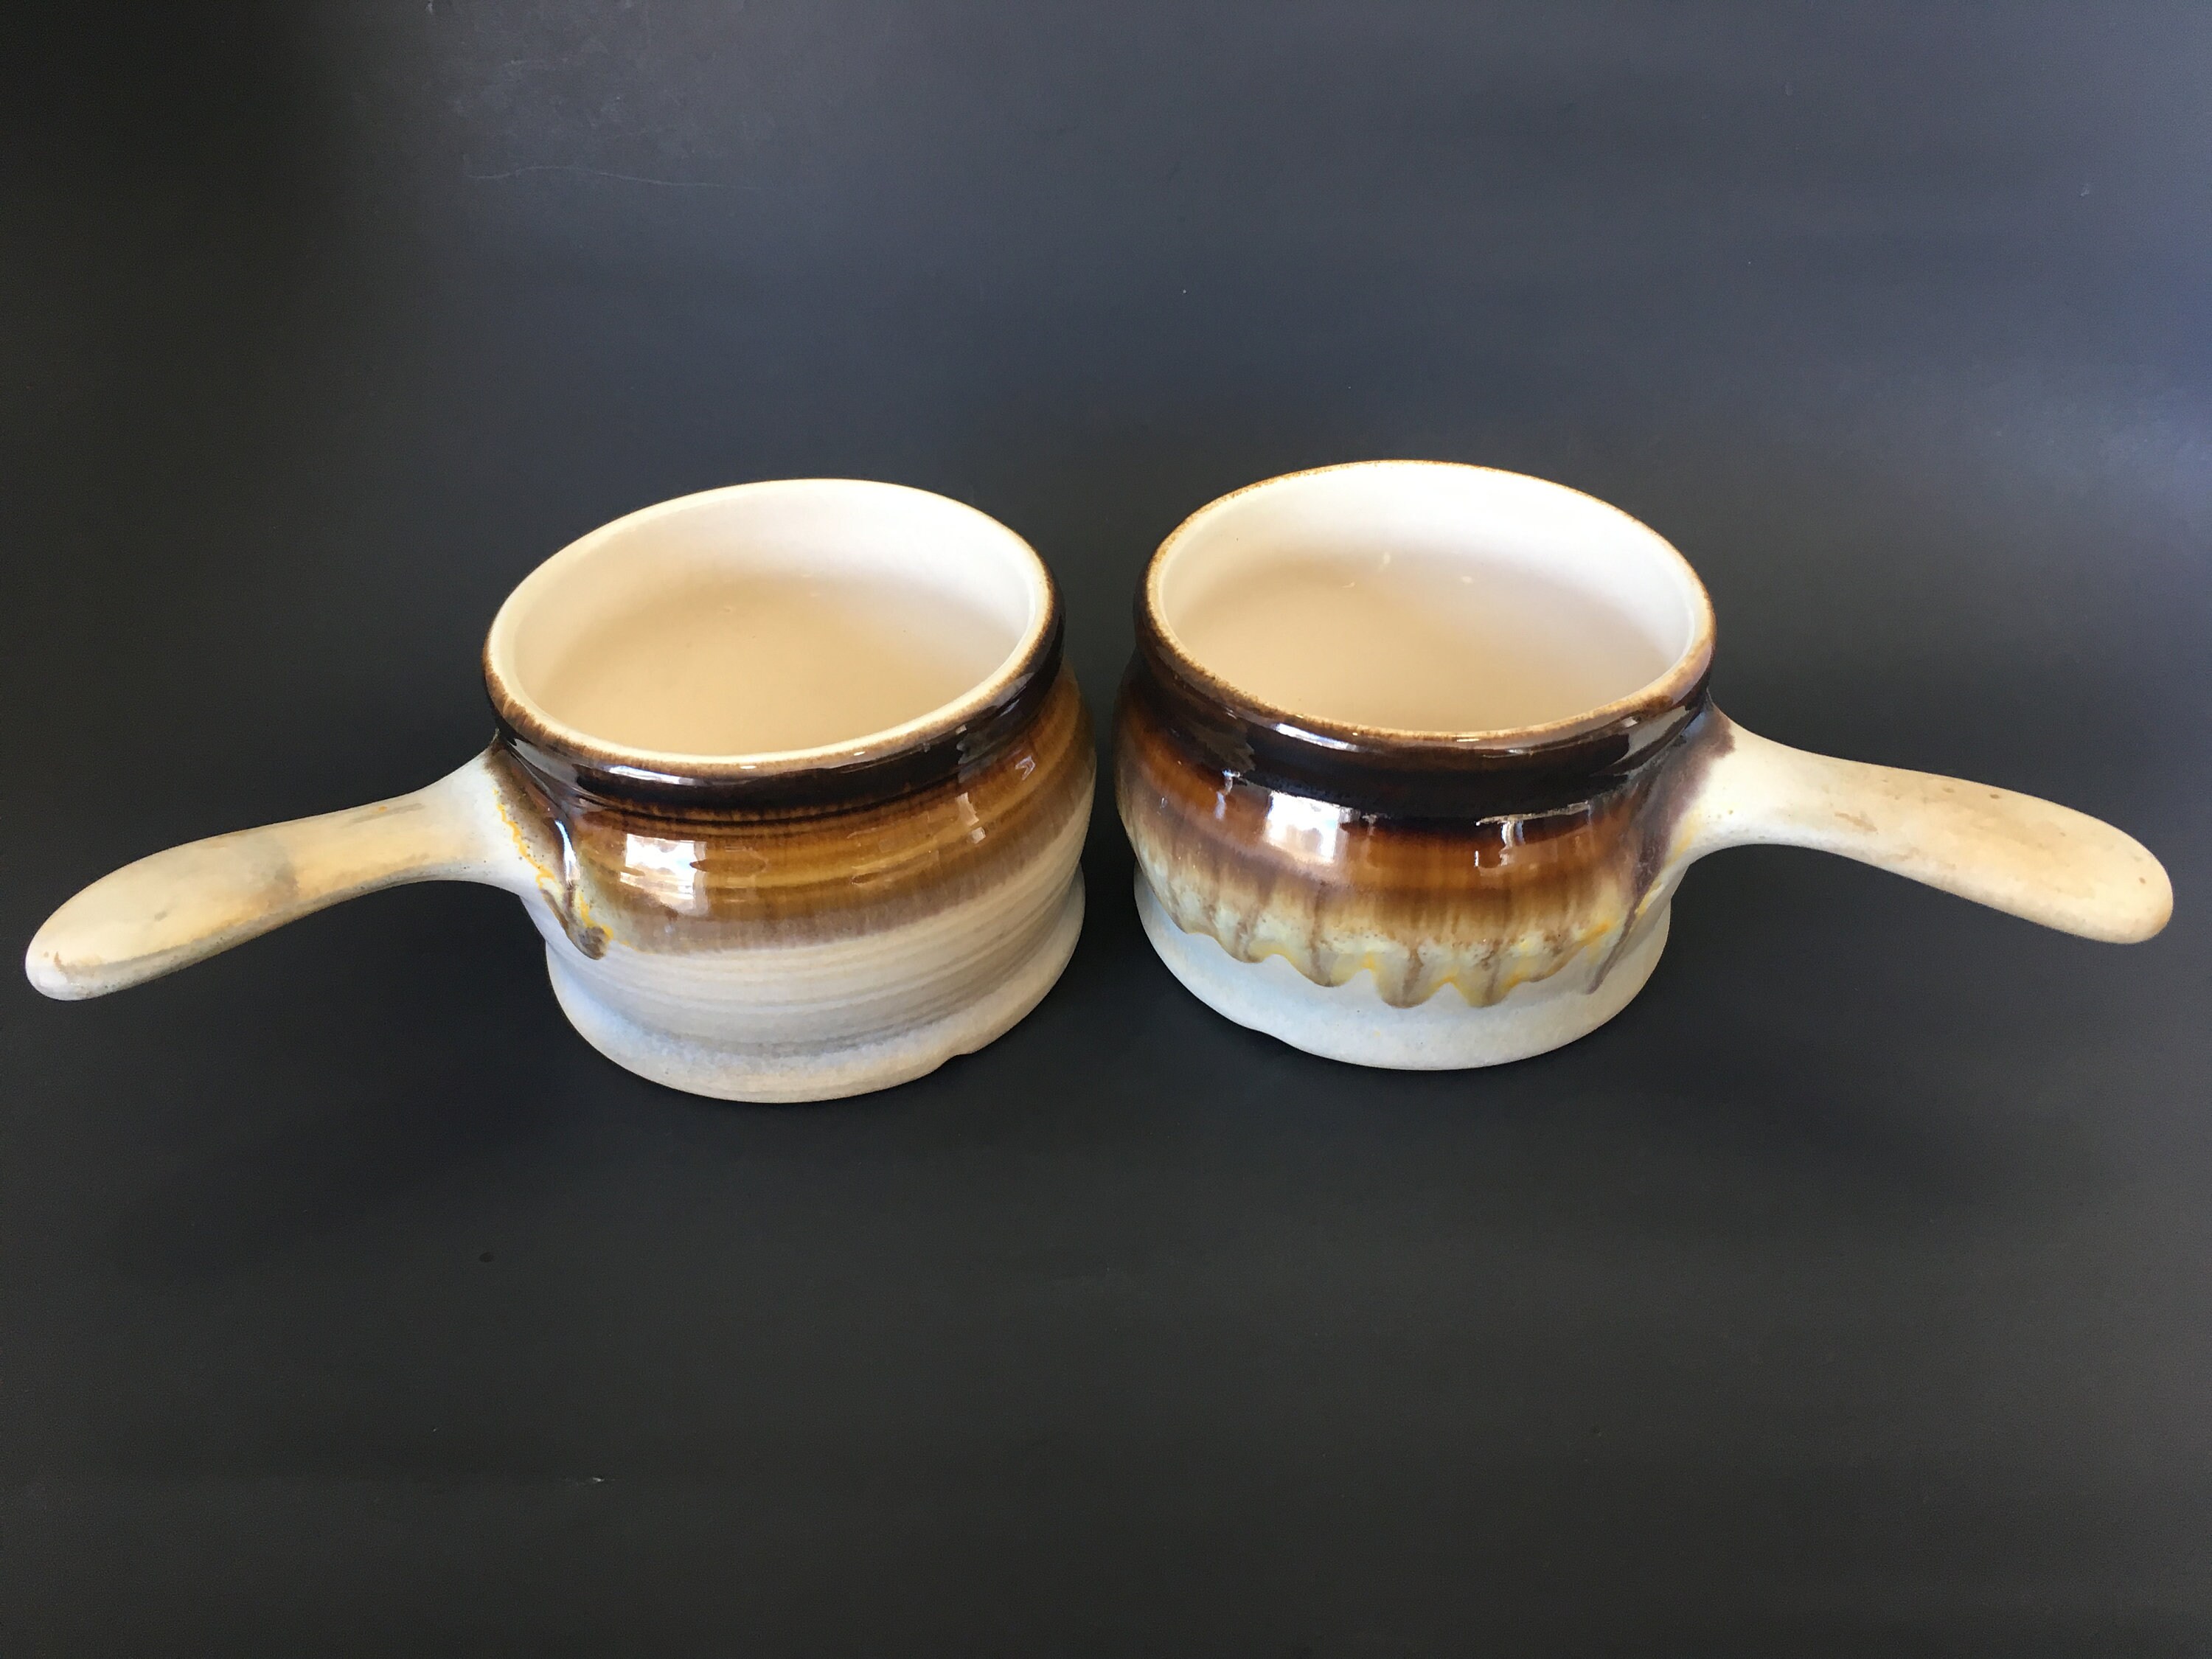 Ceramic Soup Bowl Lidded Soup Serving Bowl Double Handle Soup Bowl Large  Capacity Soup Container